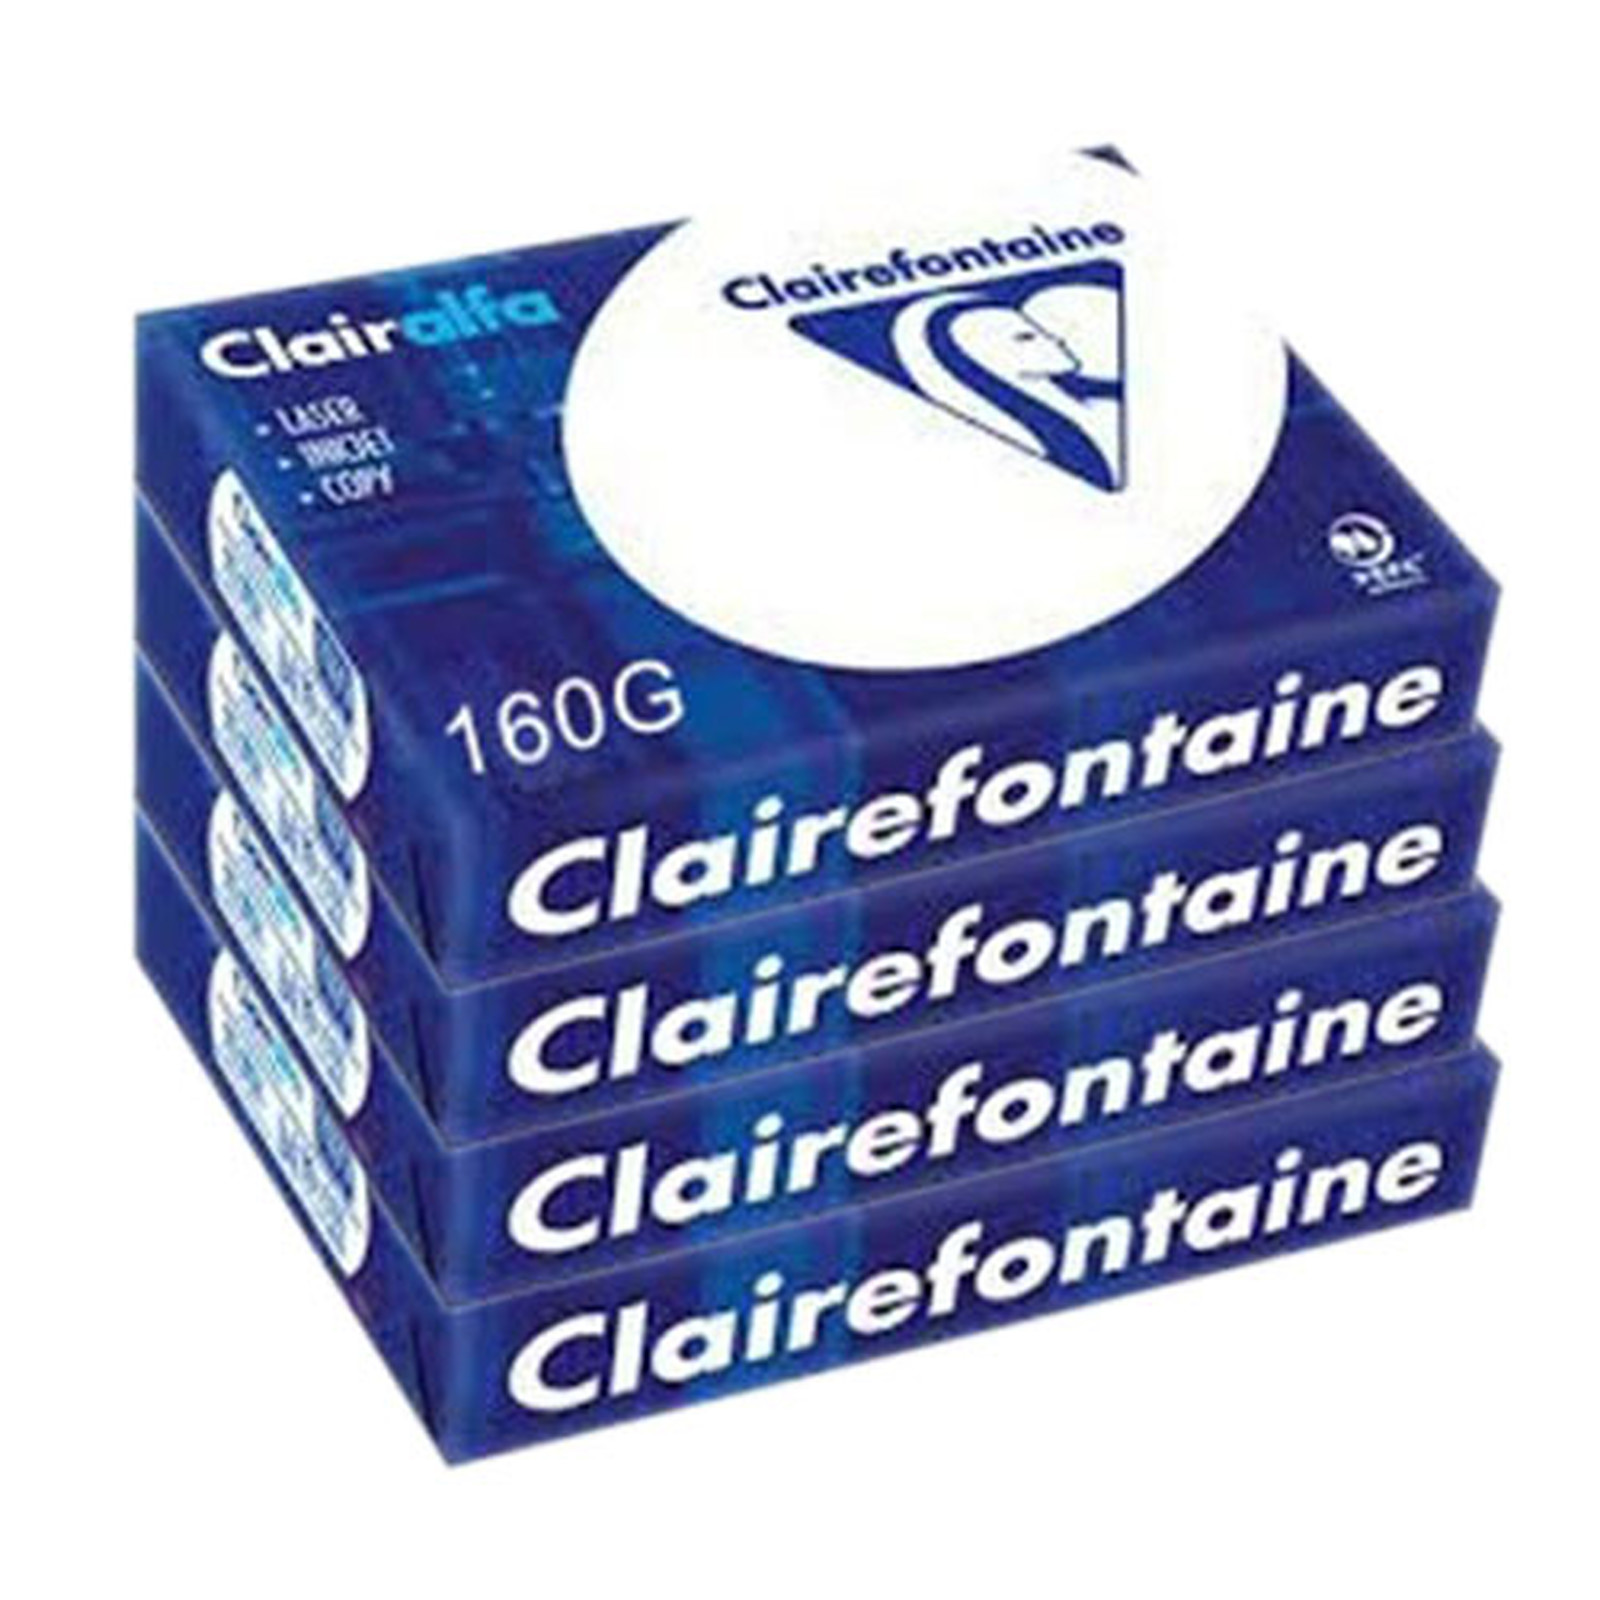 Clairefontaine Clairalfa A4 160g ramette 250 feuilles Blanc X4 - Ramette de papier Clairefontaine